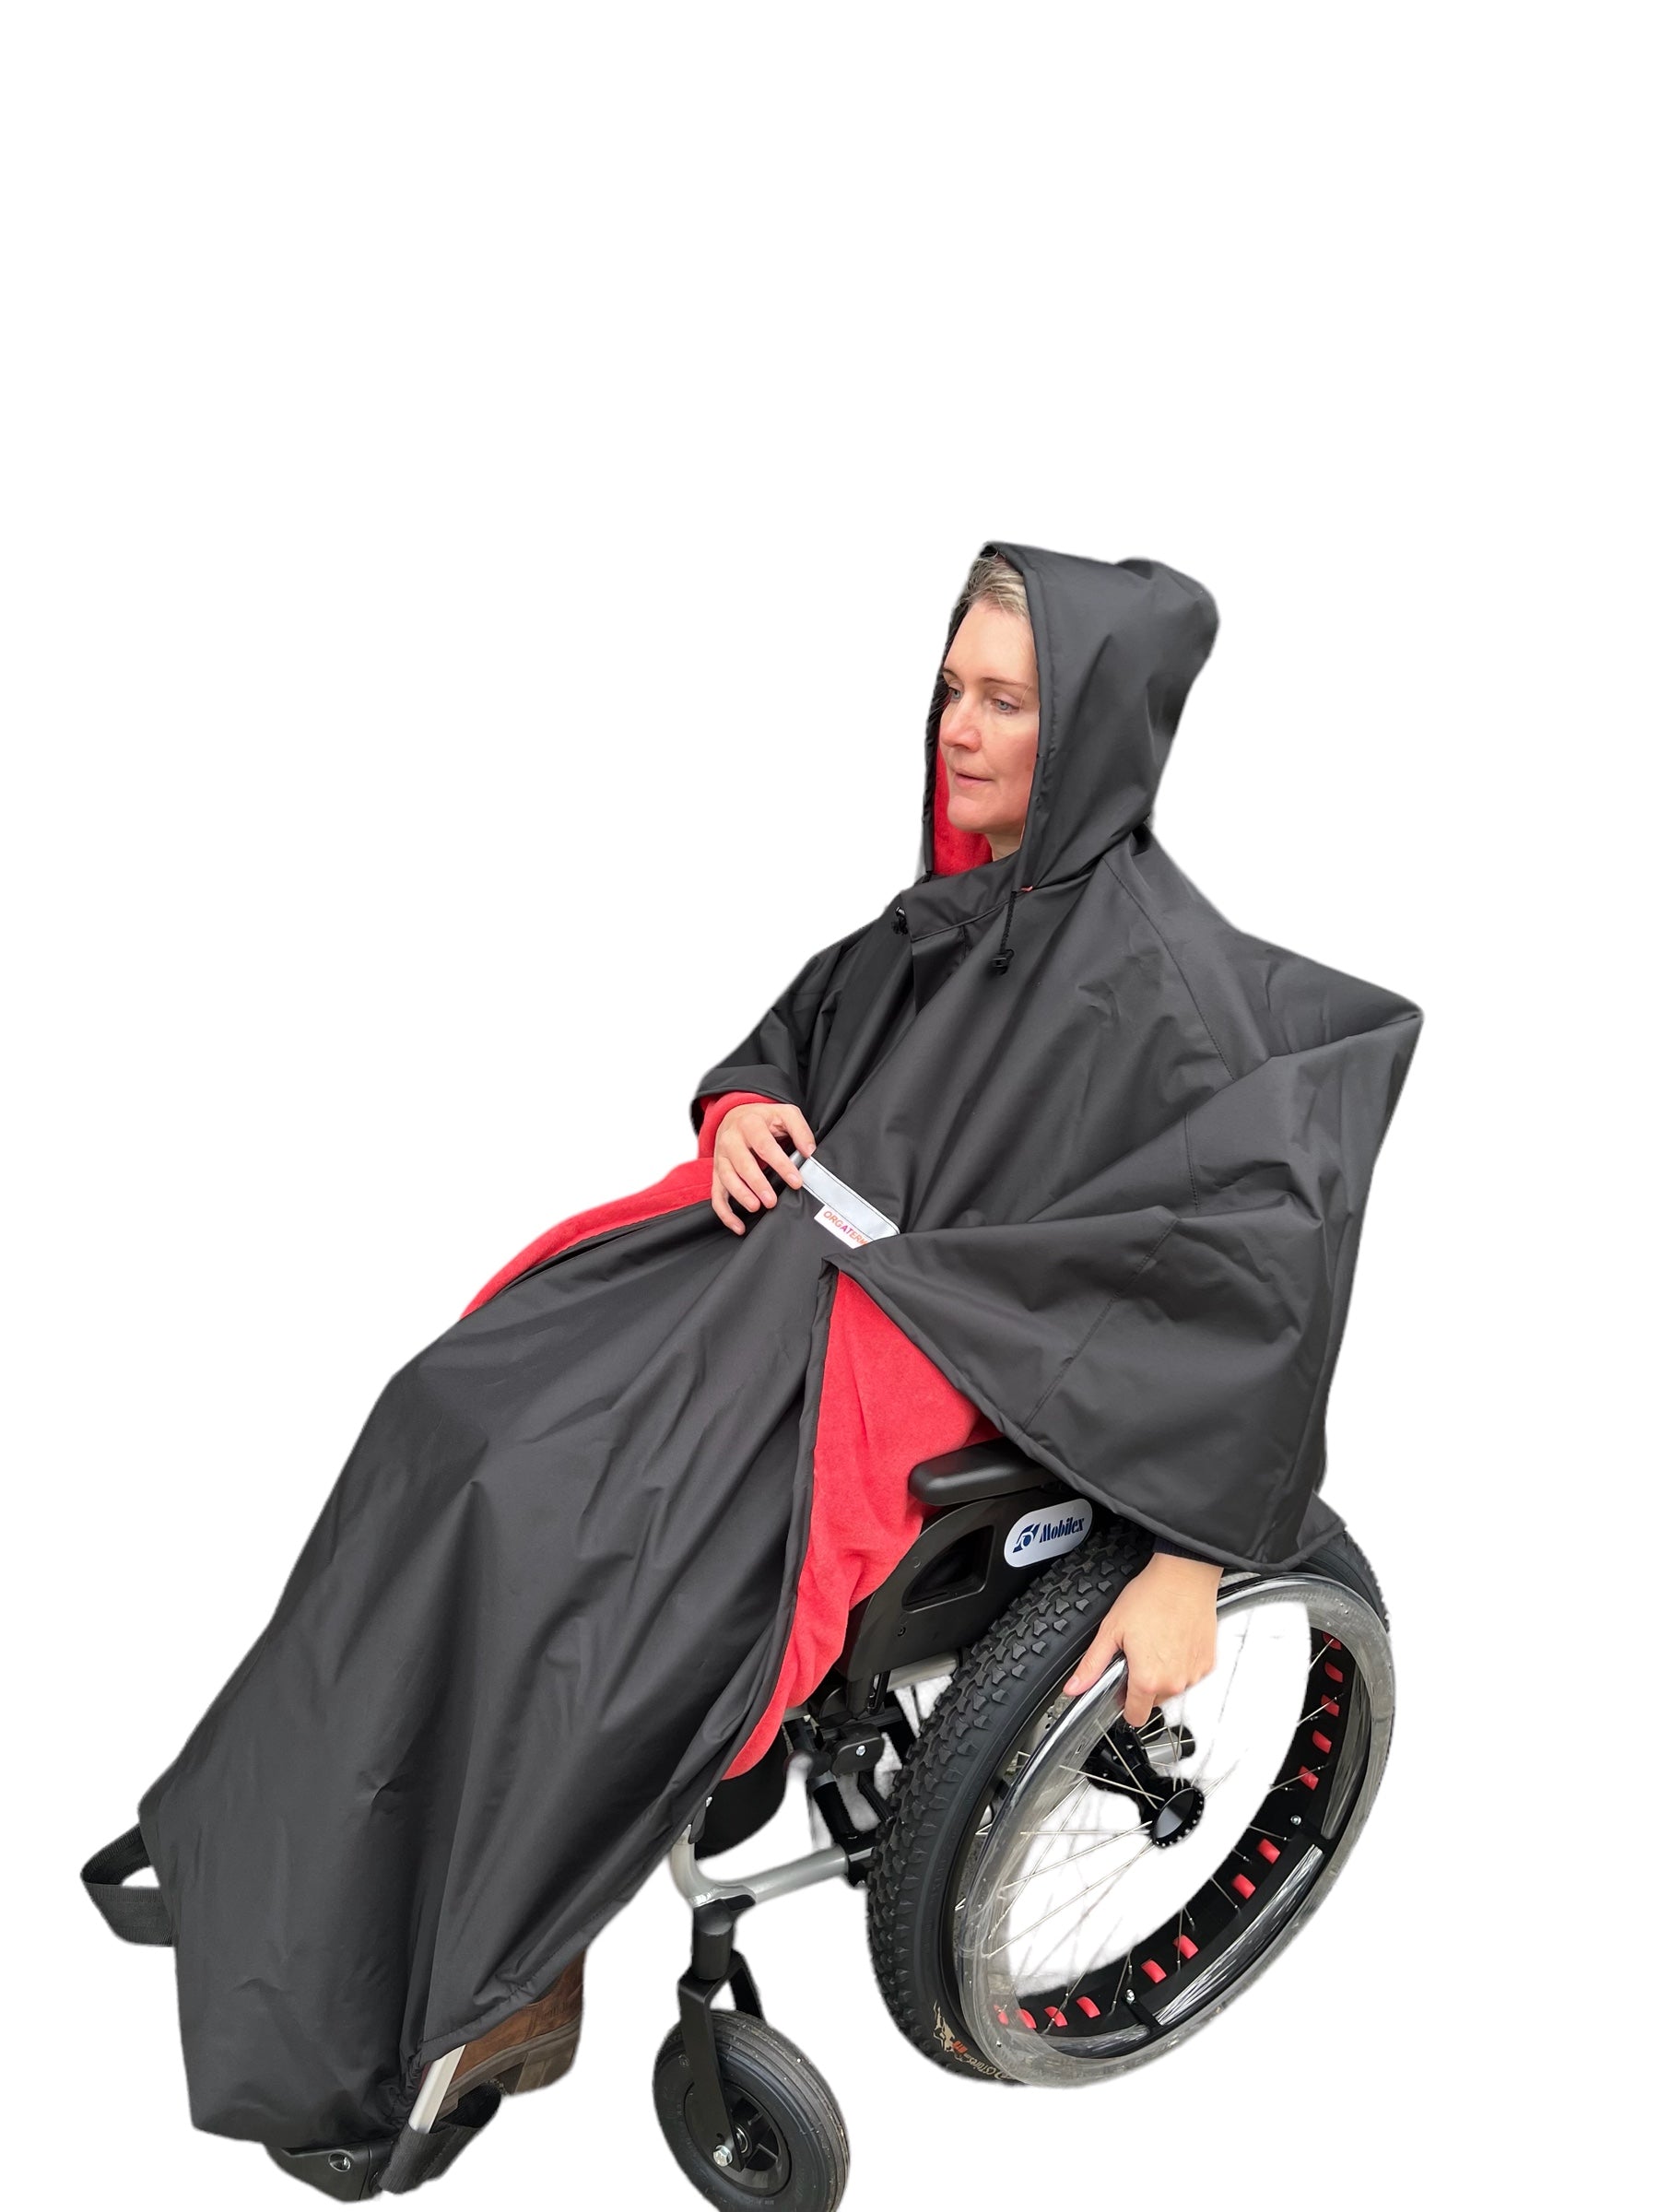 Se Vandtæt poncho med blød fleece til kørestolsbrugere - Beskyttelse mod regn og kulde - 3 str, LARGE/ Size 5 (BLÅ/GRÅ) hos Seniorpleje